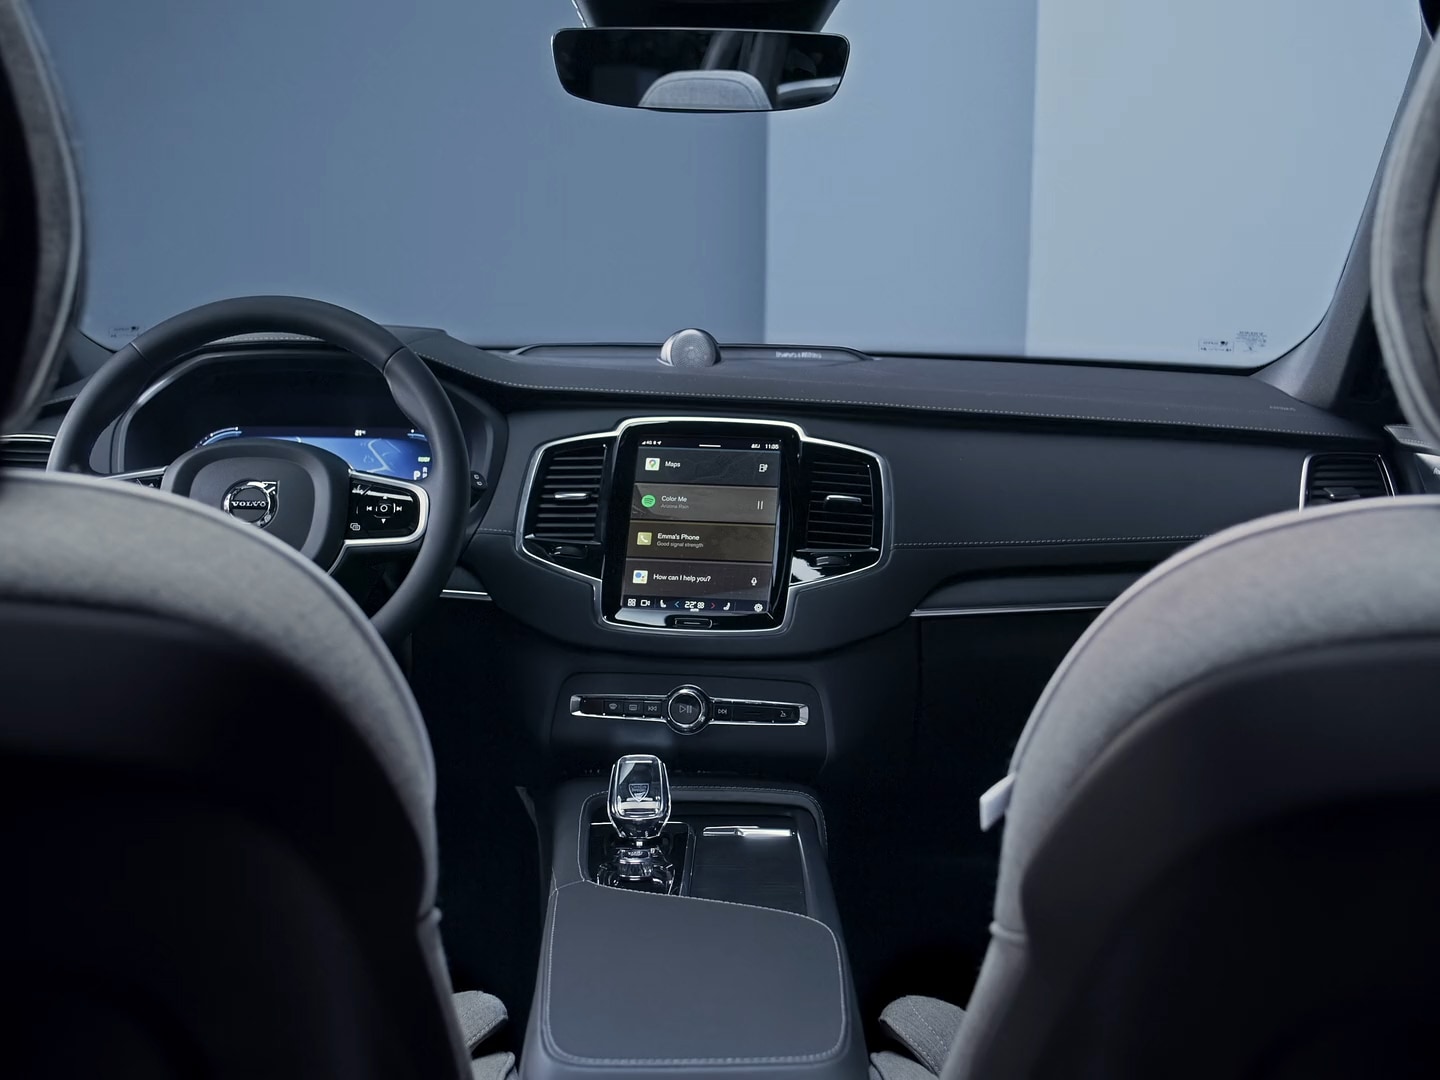 O volante, painel de instrumentos, ecrã tátil do sistema de informação e entretenimento, e a consola central do Volvo XC90 híbrido plug-in.